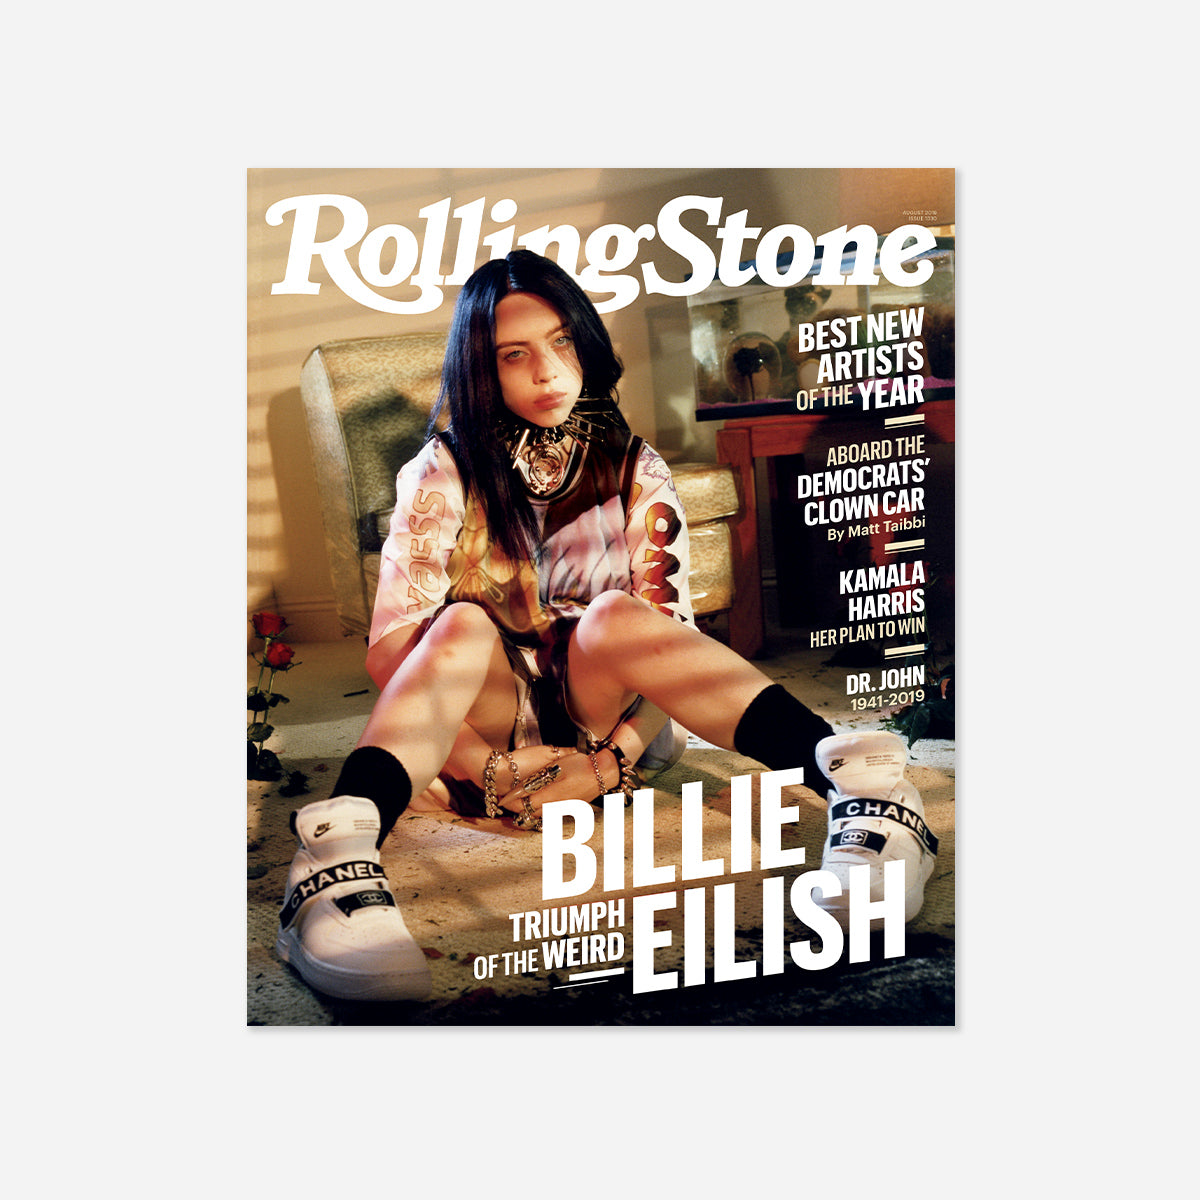 Rolling Stone Magazine August 2019 Featuring Billie Eilish (Issue 1330)